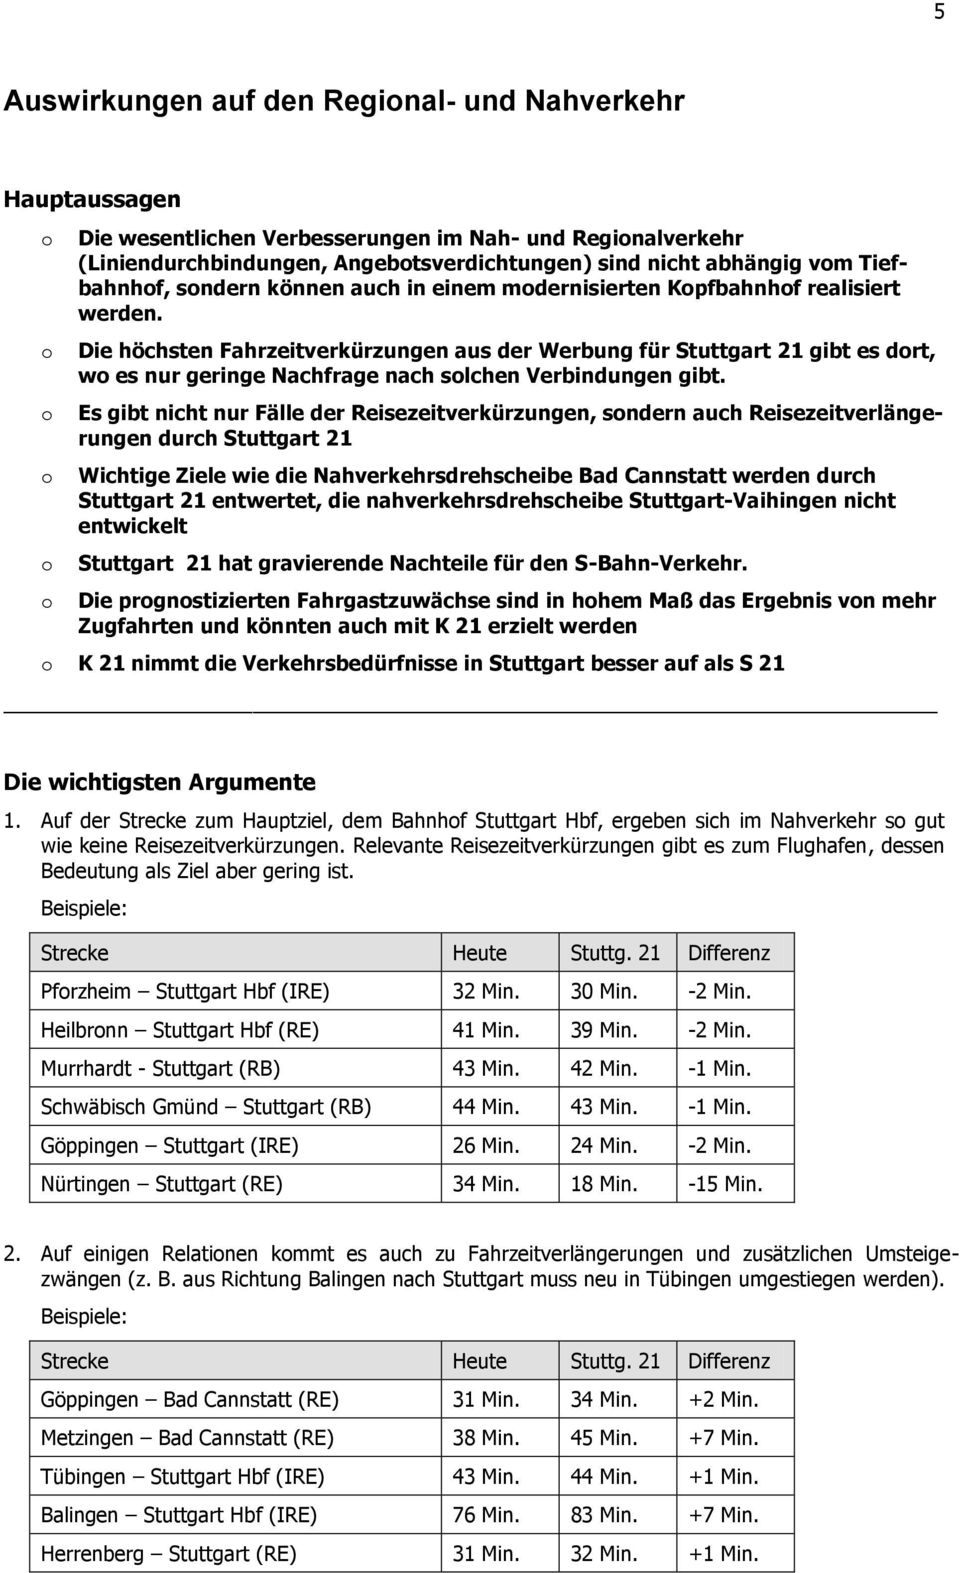 Die höchsten Fahrzeitverkürzungen aus der Werbung für Stuttgart 21 gibt es drt, w es nur geringe Nachfrage nach slchen Verbindungen gibt.